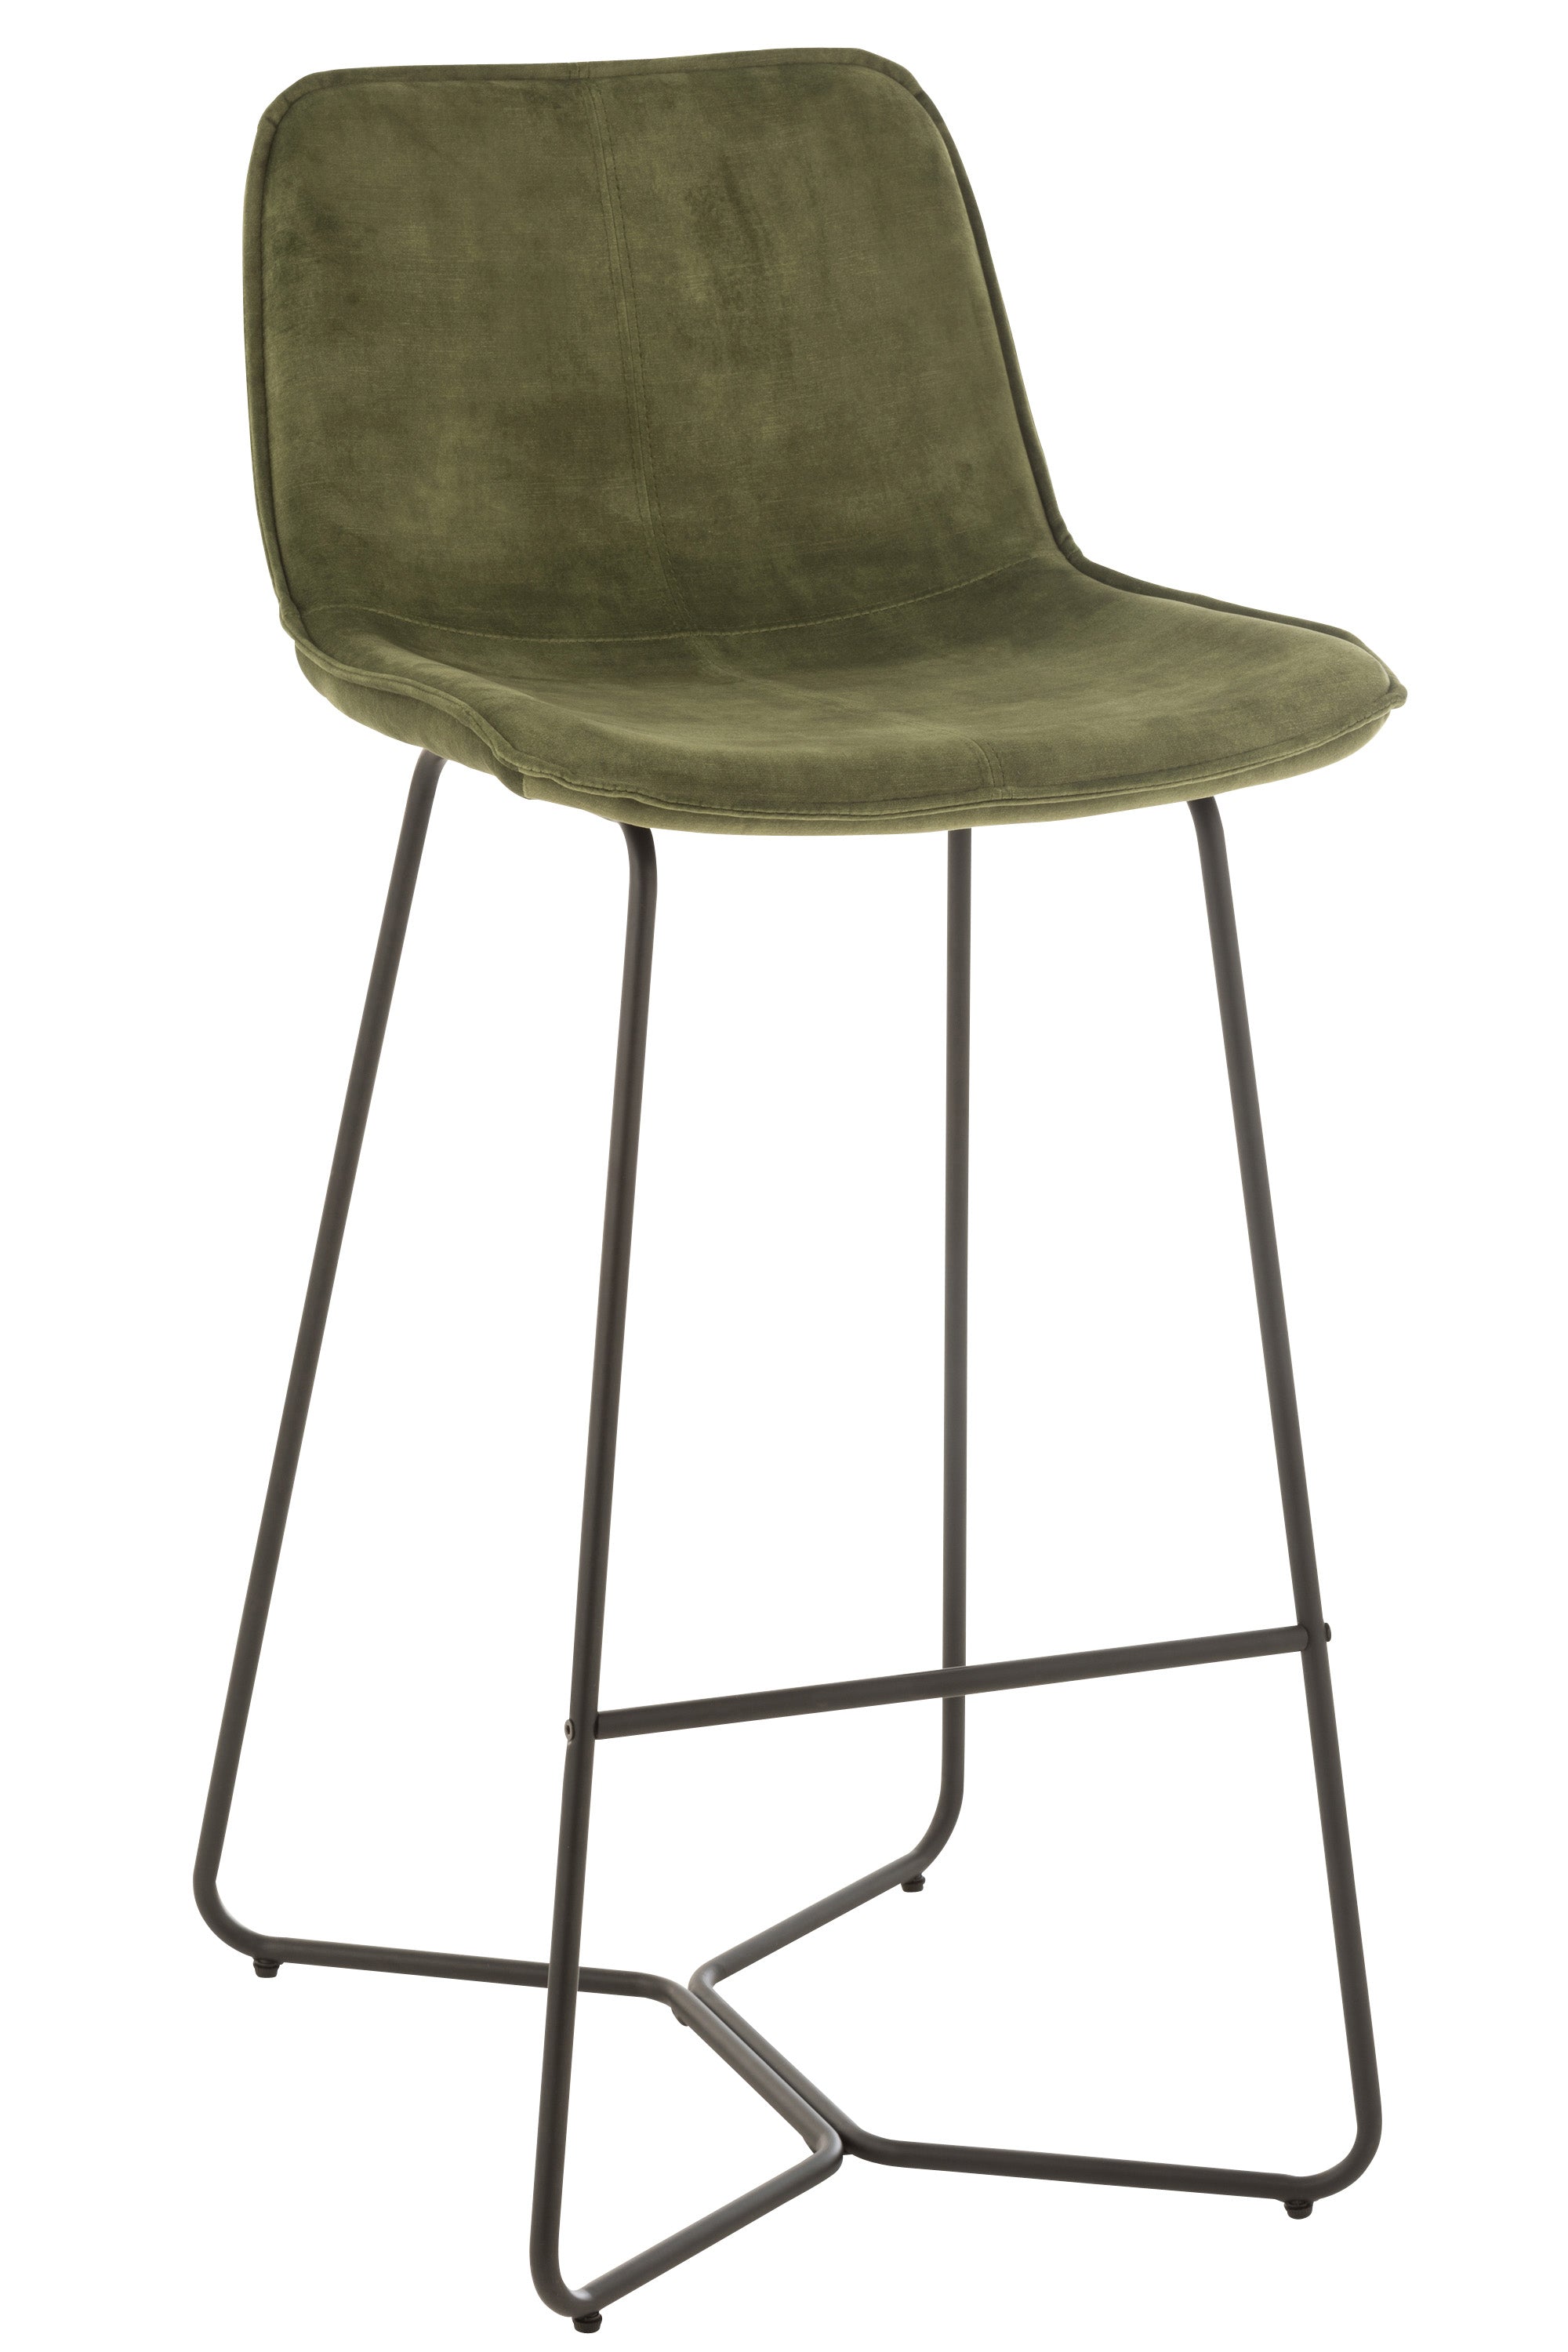 Barhocker in modernem Design, Sitzschale mit halbhohem Lehne, gepolstert, bezogen mit erbsengrüner Mikrofaser auf einem kufenartigen Gestell aus schwarzem Eisen.